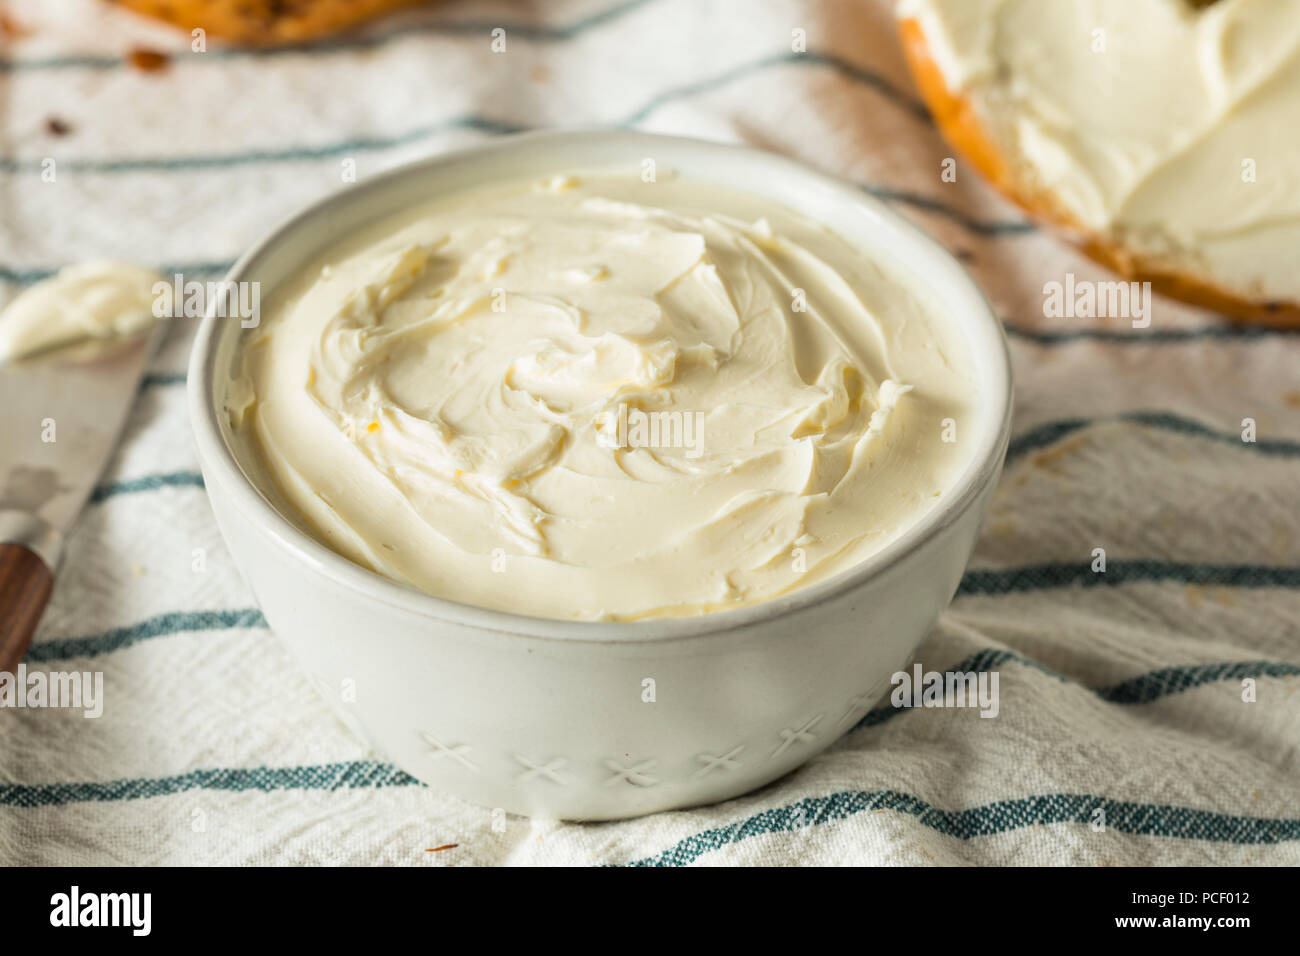 Crema de queso bajo en grasa caseros esparcidos en un tazón Foto de stock